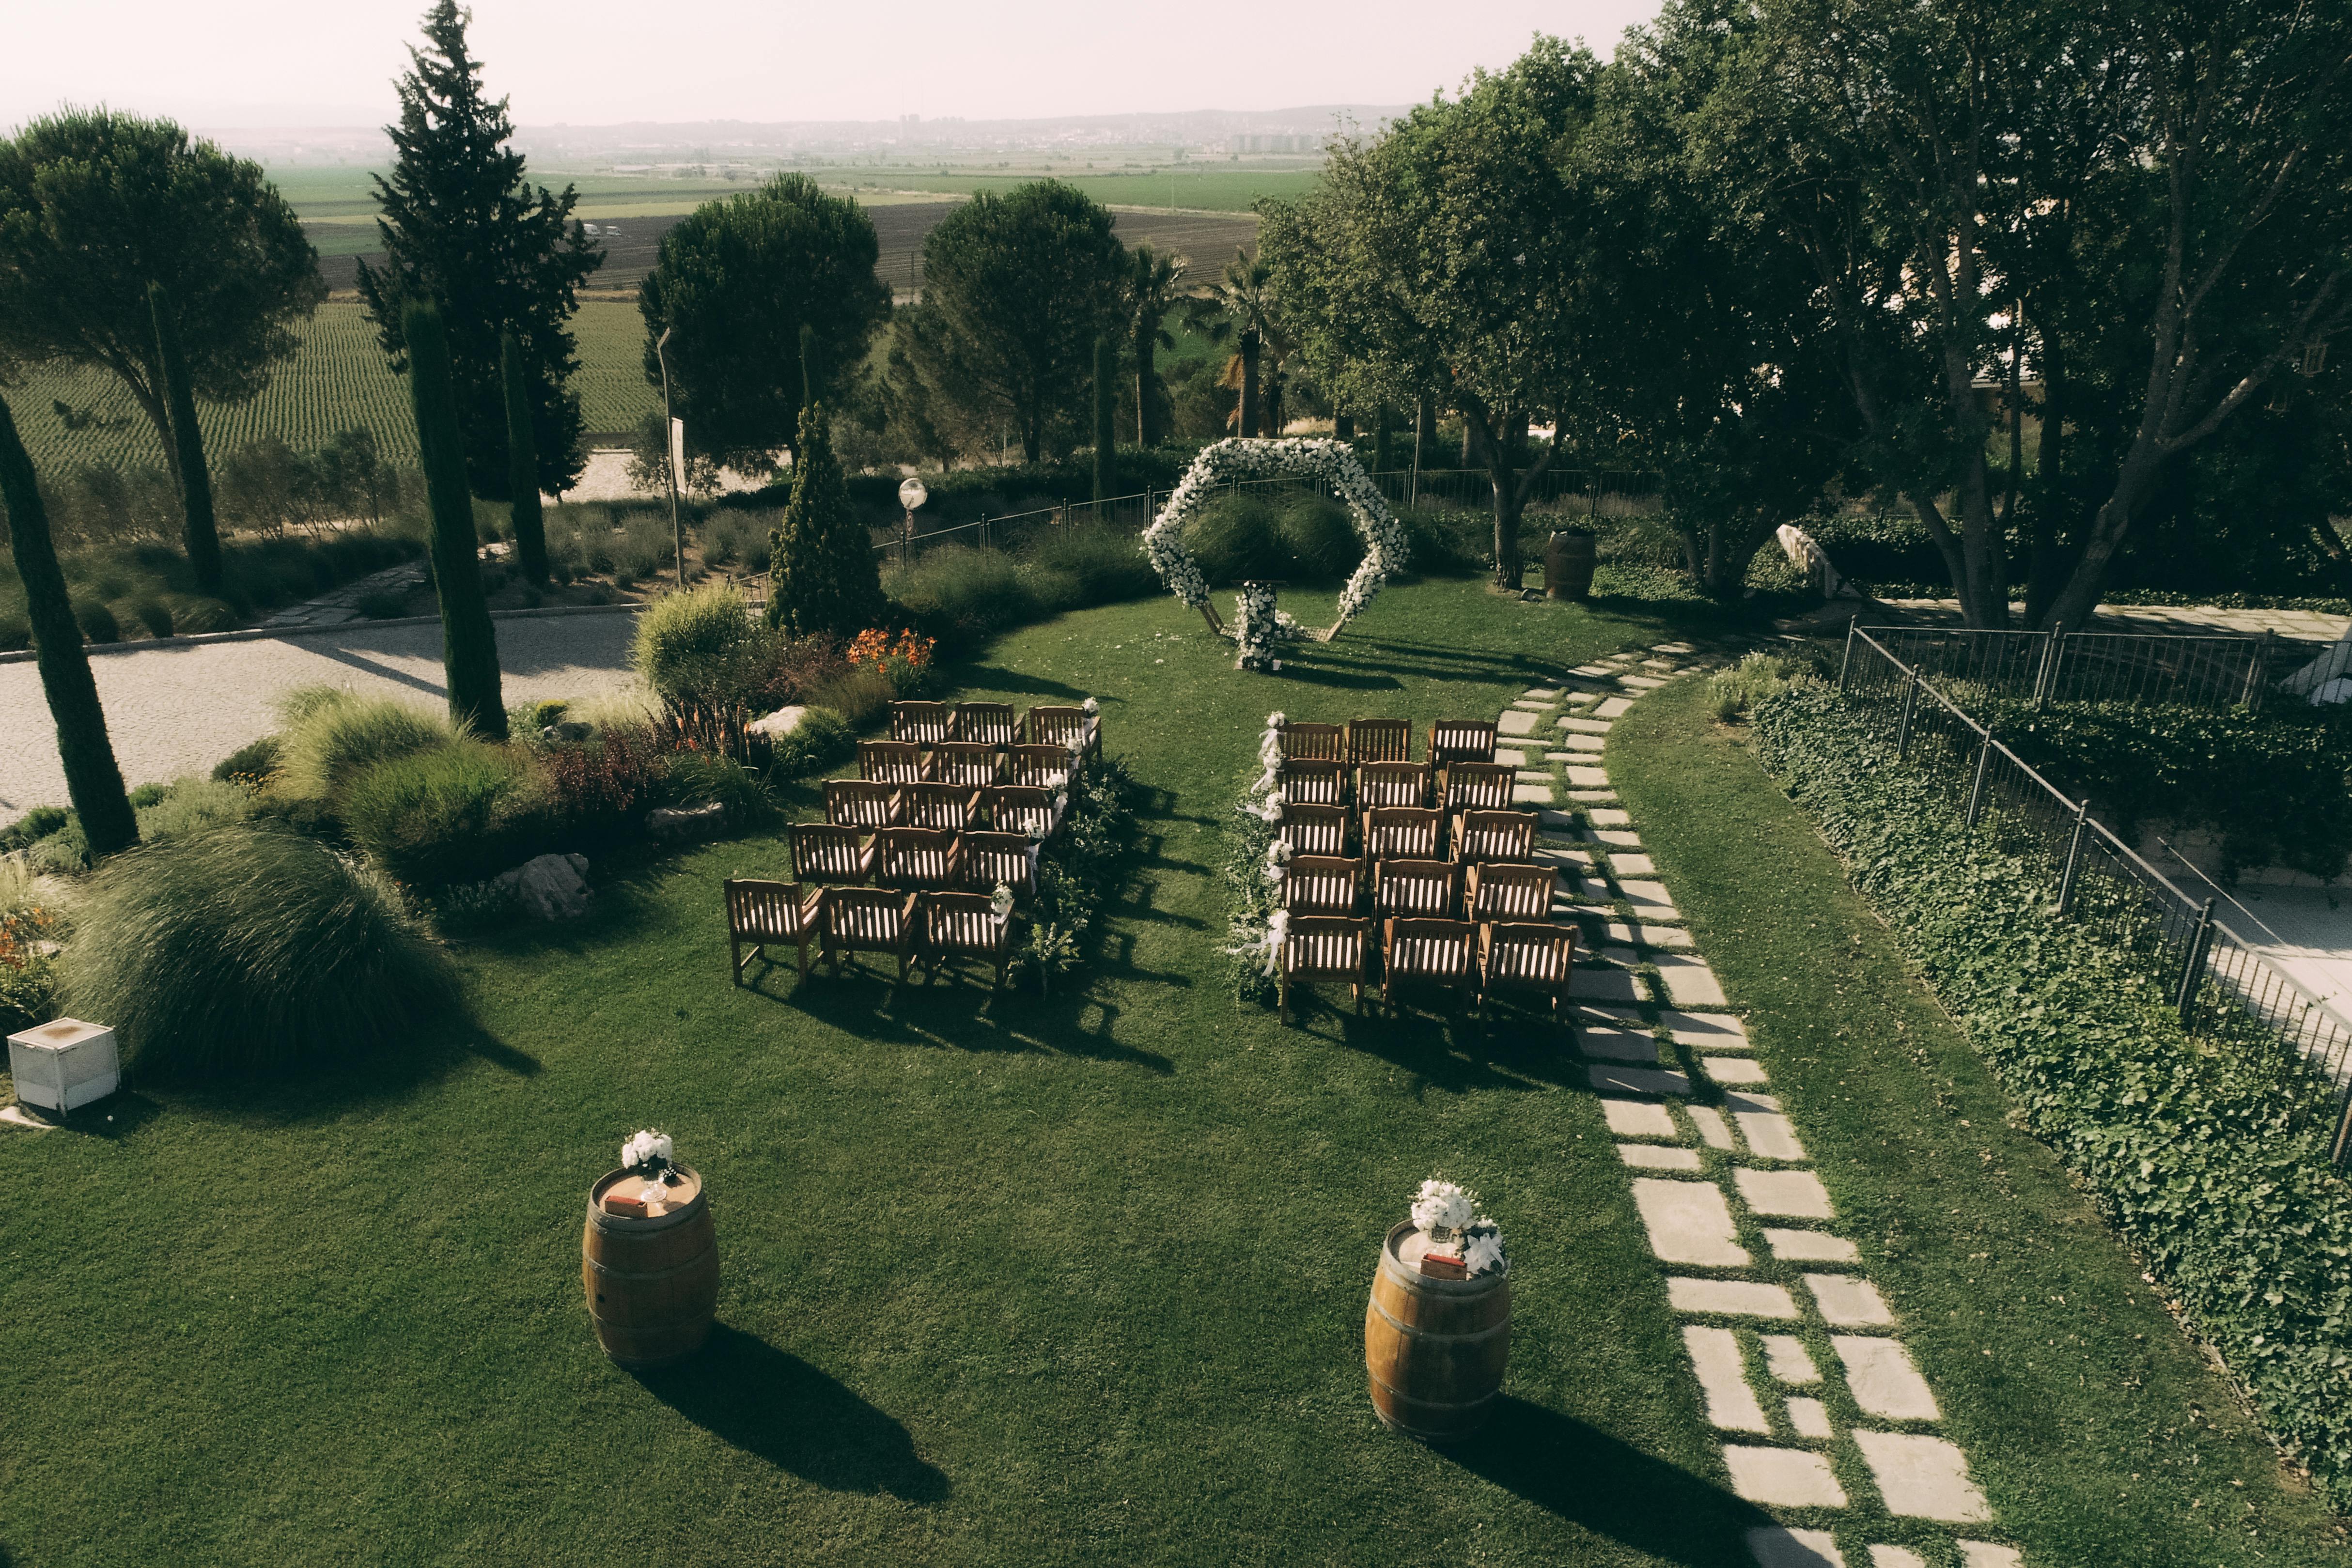 Un jardin préparé pour une cérémonie de mariage | Source : Pexels